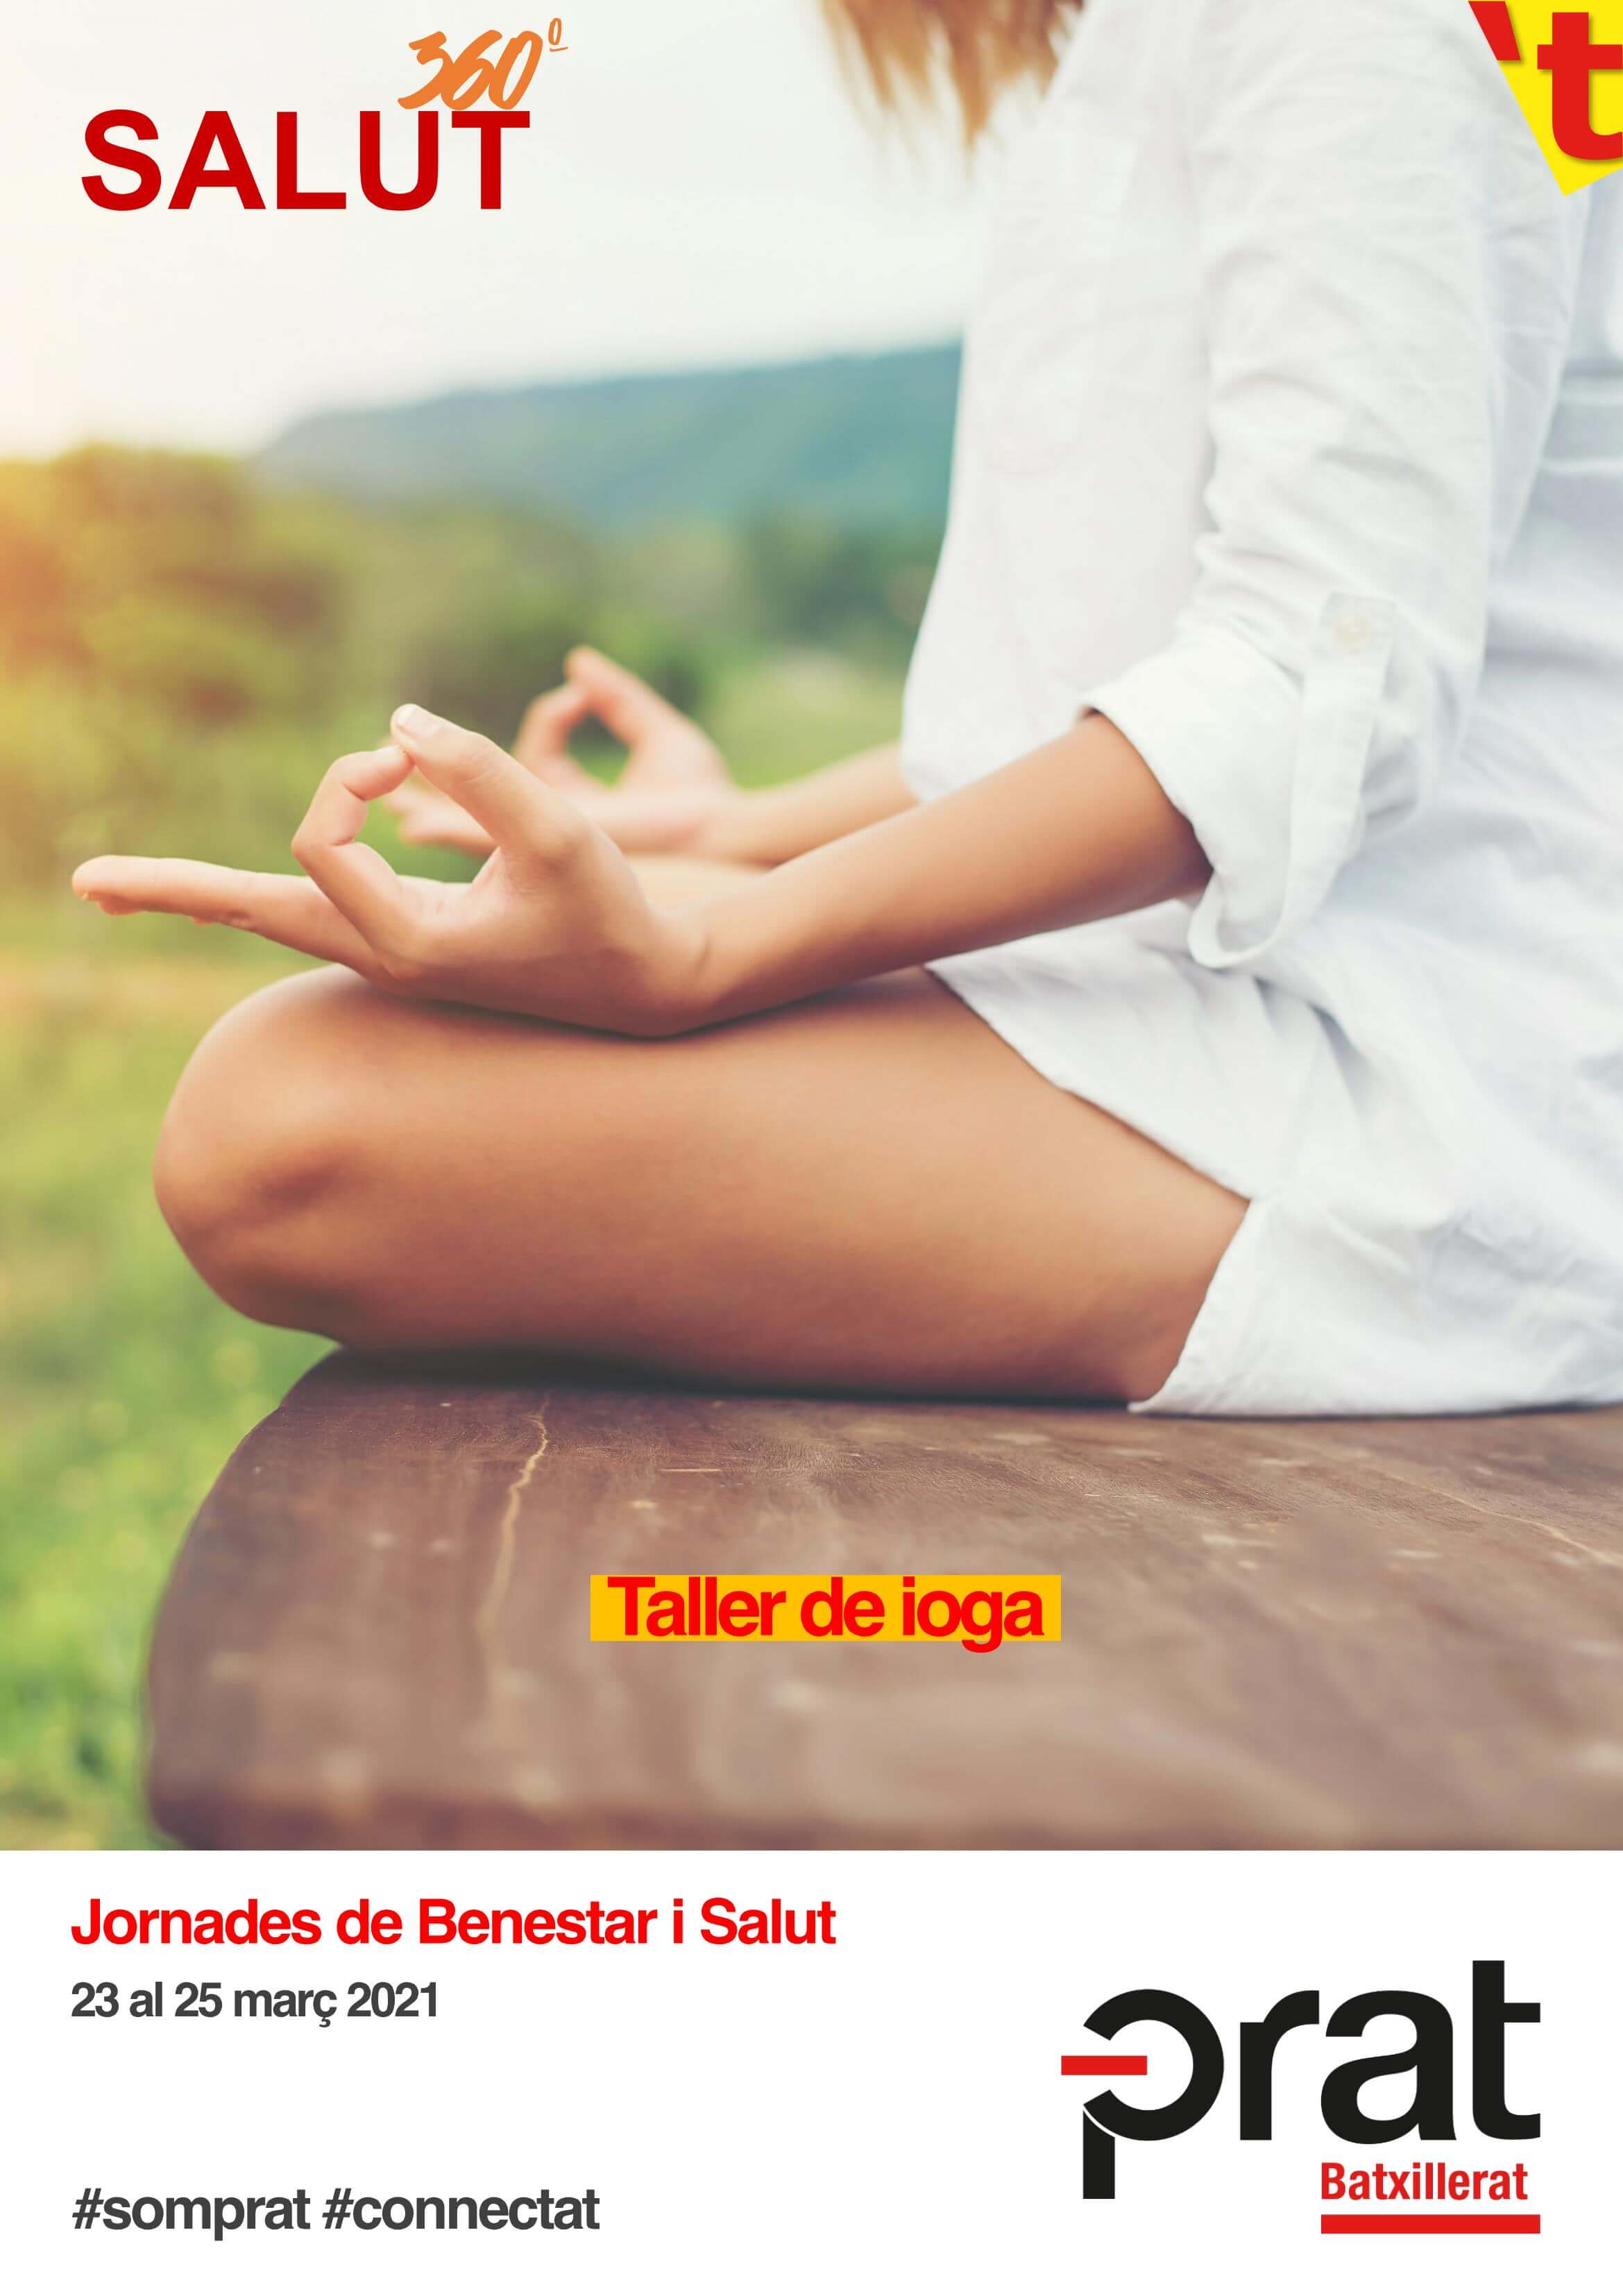 Jornades de Benestar i Salut: taller de ioga - Batxillerat a Prat Educació